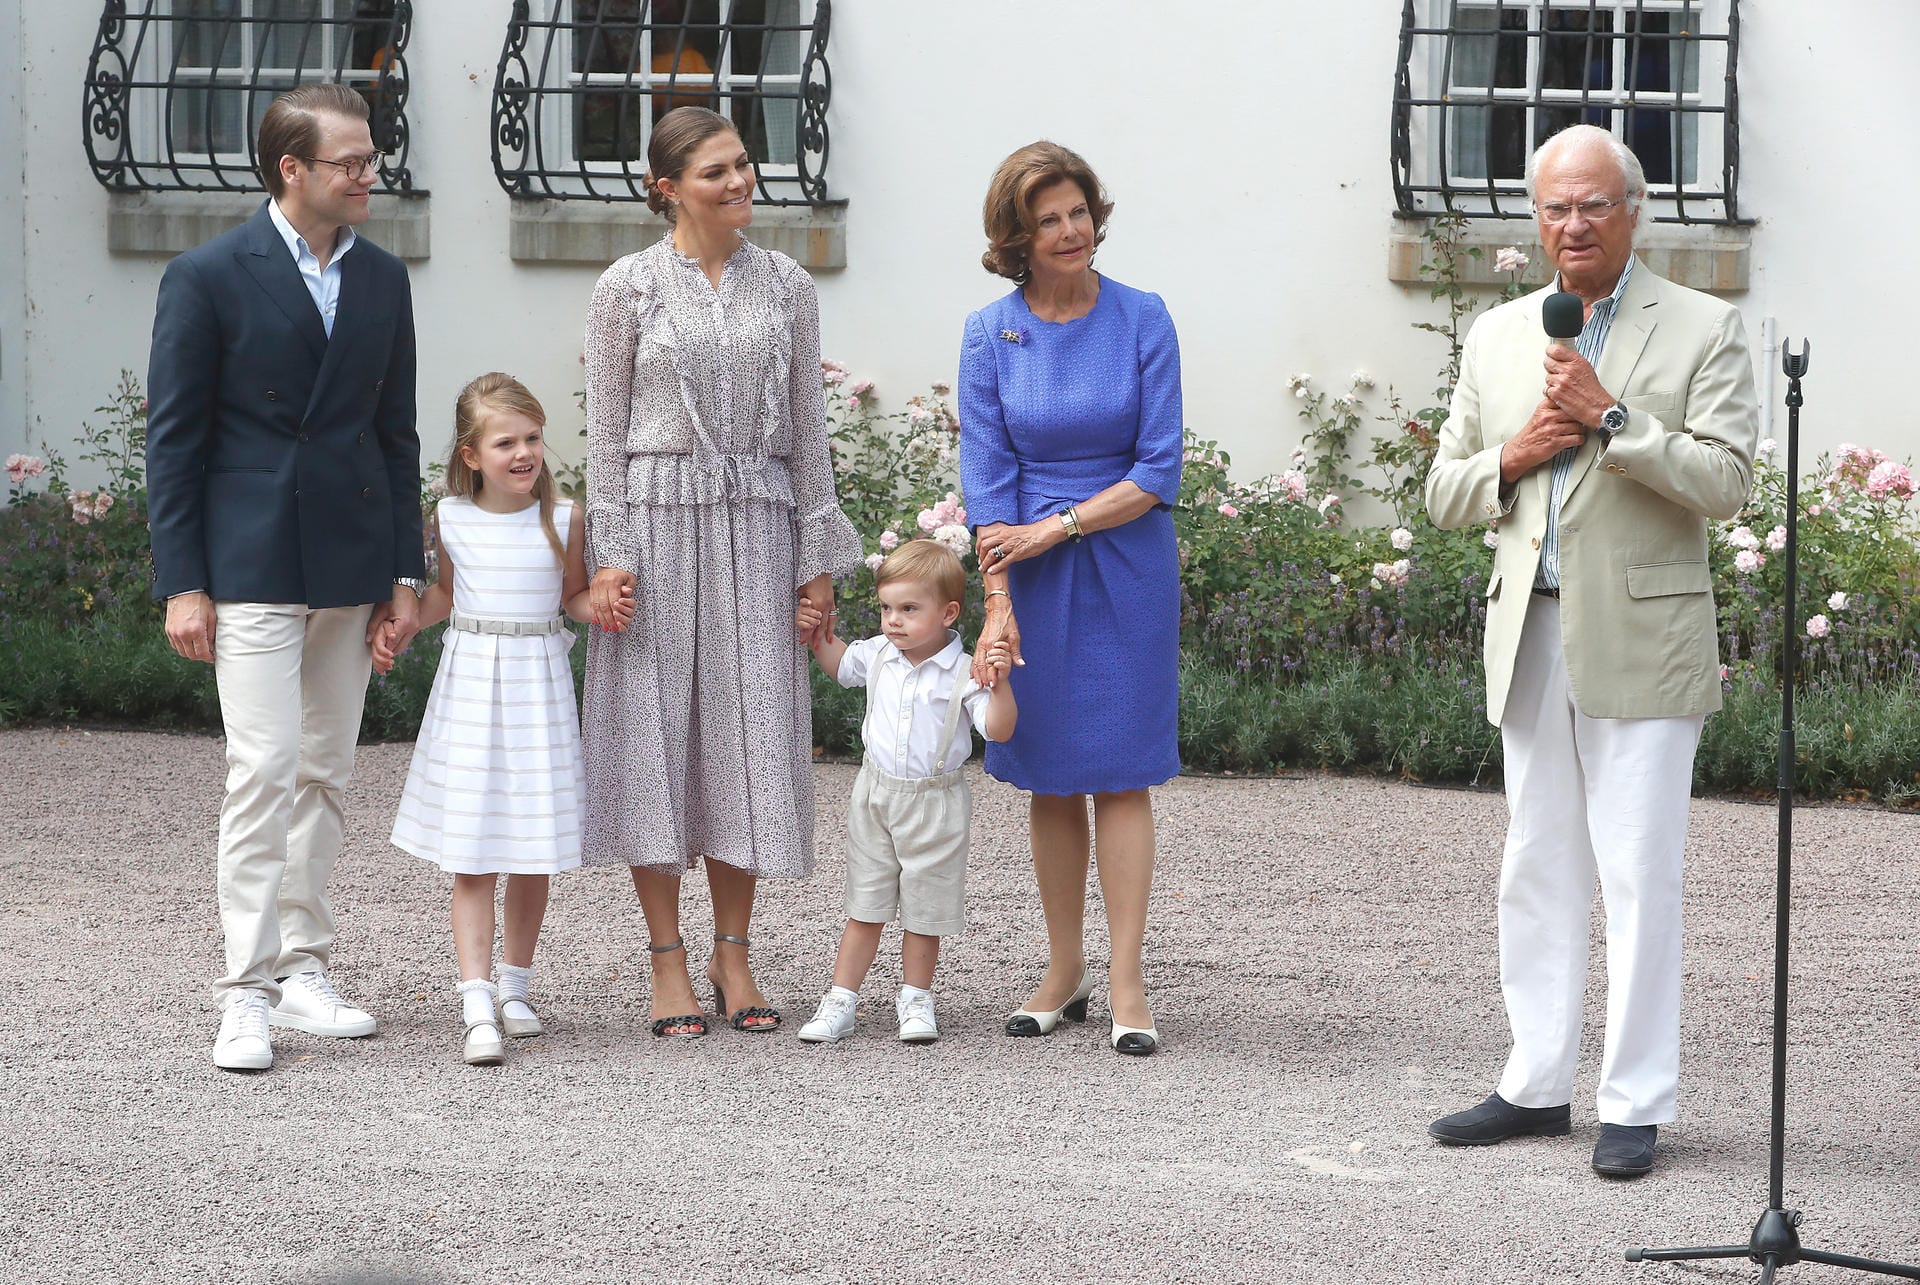 Auf das Posieren für die Fotografen hatte der zweijährige Prinz offenbar auch keine Lust. Während Daniel und Victoria mit Estelle in der Mitte ein ruhiges Bild abgaben, zog Oscar am Arm von Oma Köngin Silvia. König Carl Gustaf ergreift derweil das Wort.